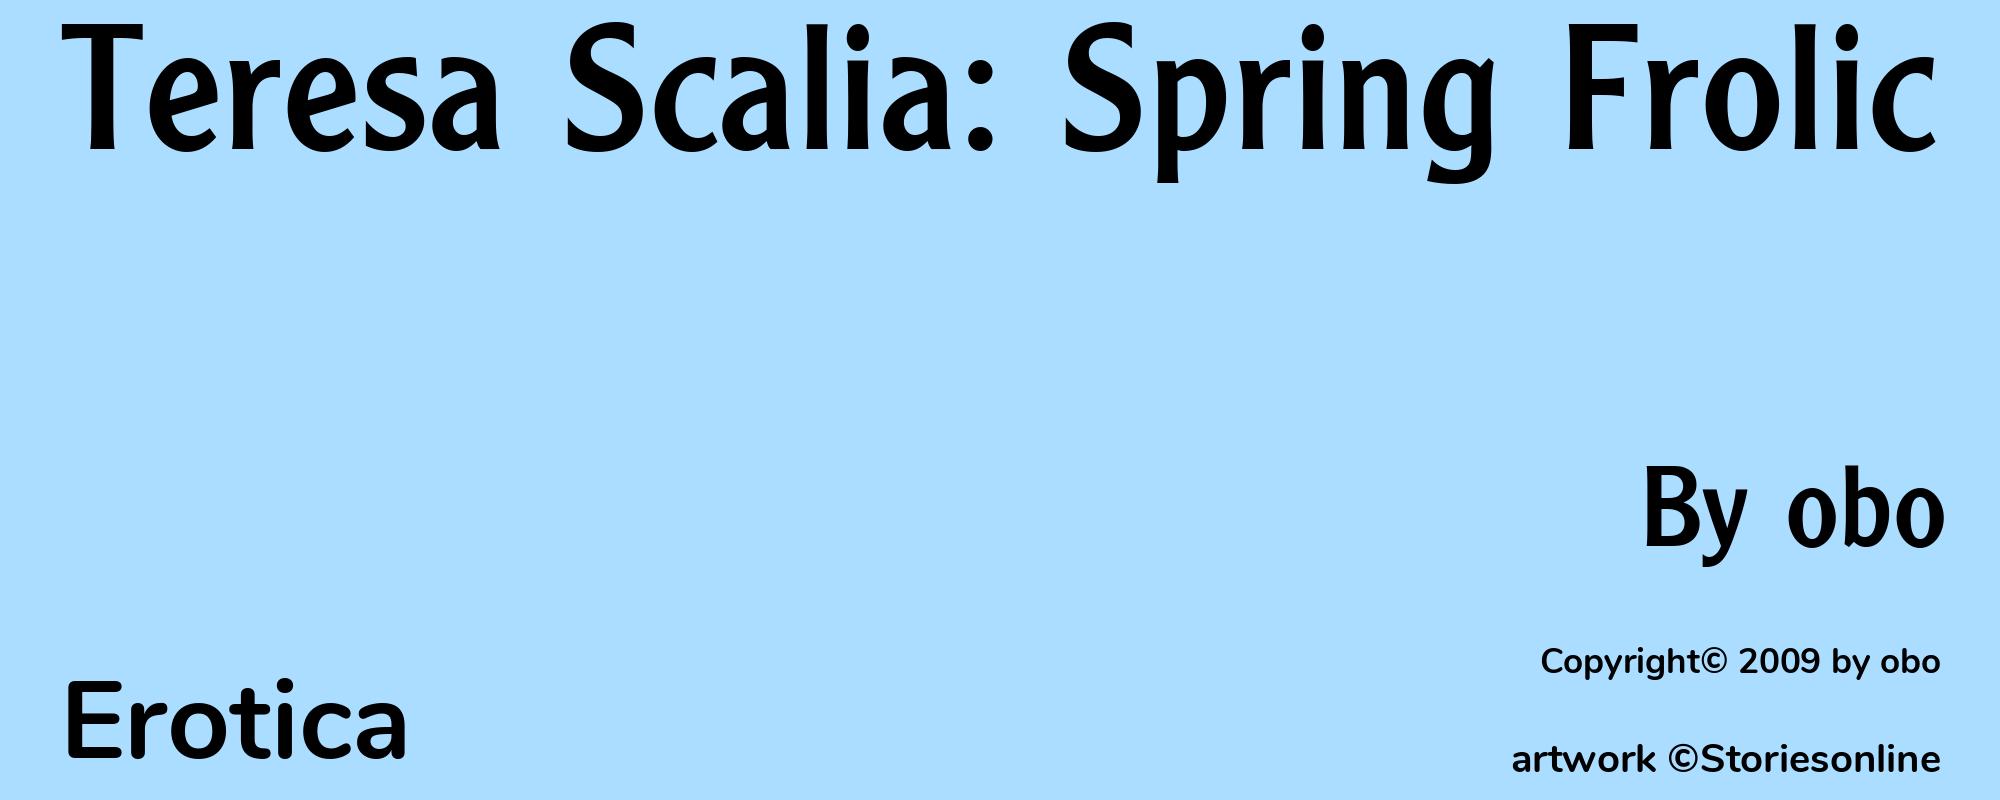 Teresa Scalia: Spring Frolic - Cover